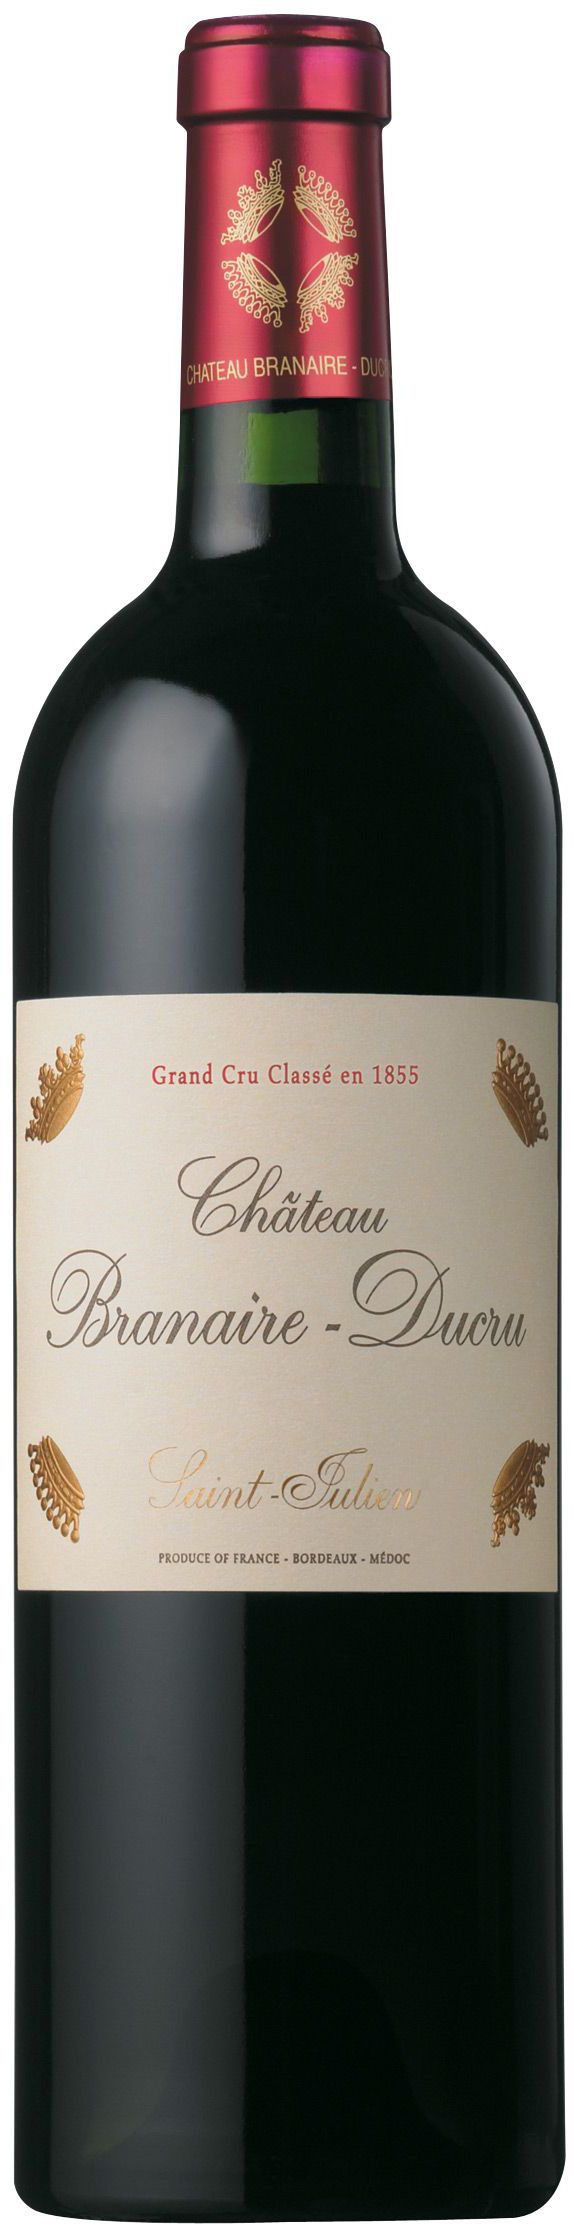 Chateau Branaire-Ducru, Grand Cru Classe, 2015